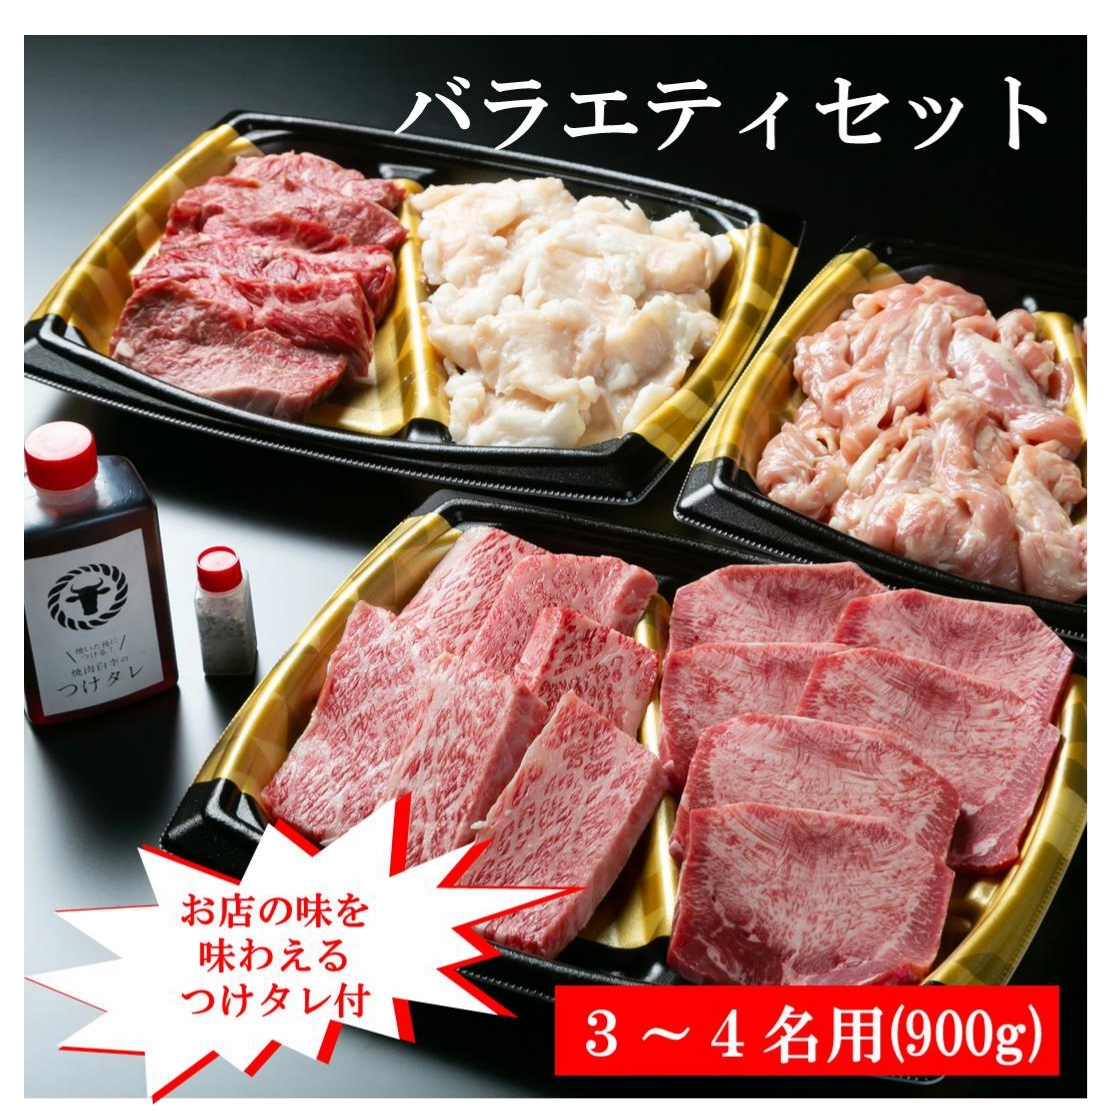 市場 冷凍 シチュー用オーストラリア産 スープ アロンサテ 1kg 牛スネ 牛肉類